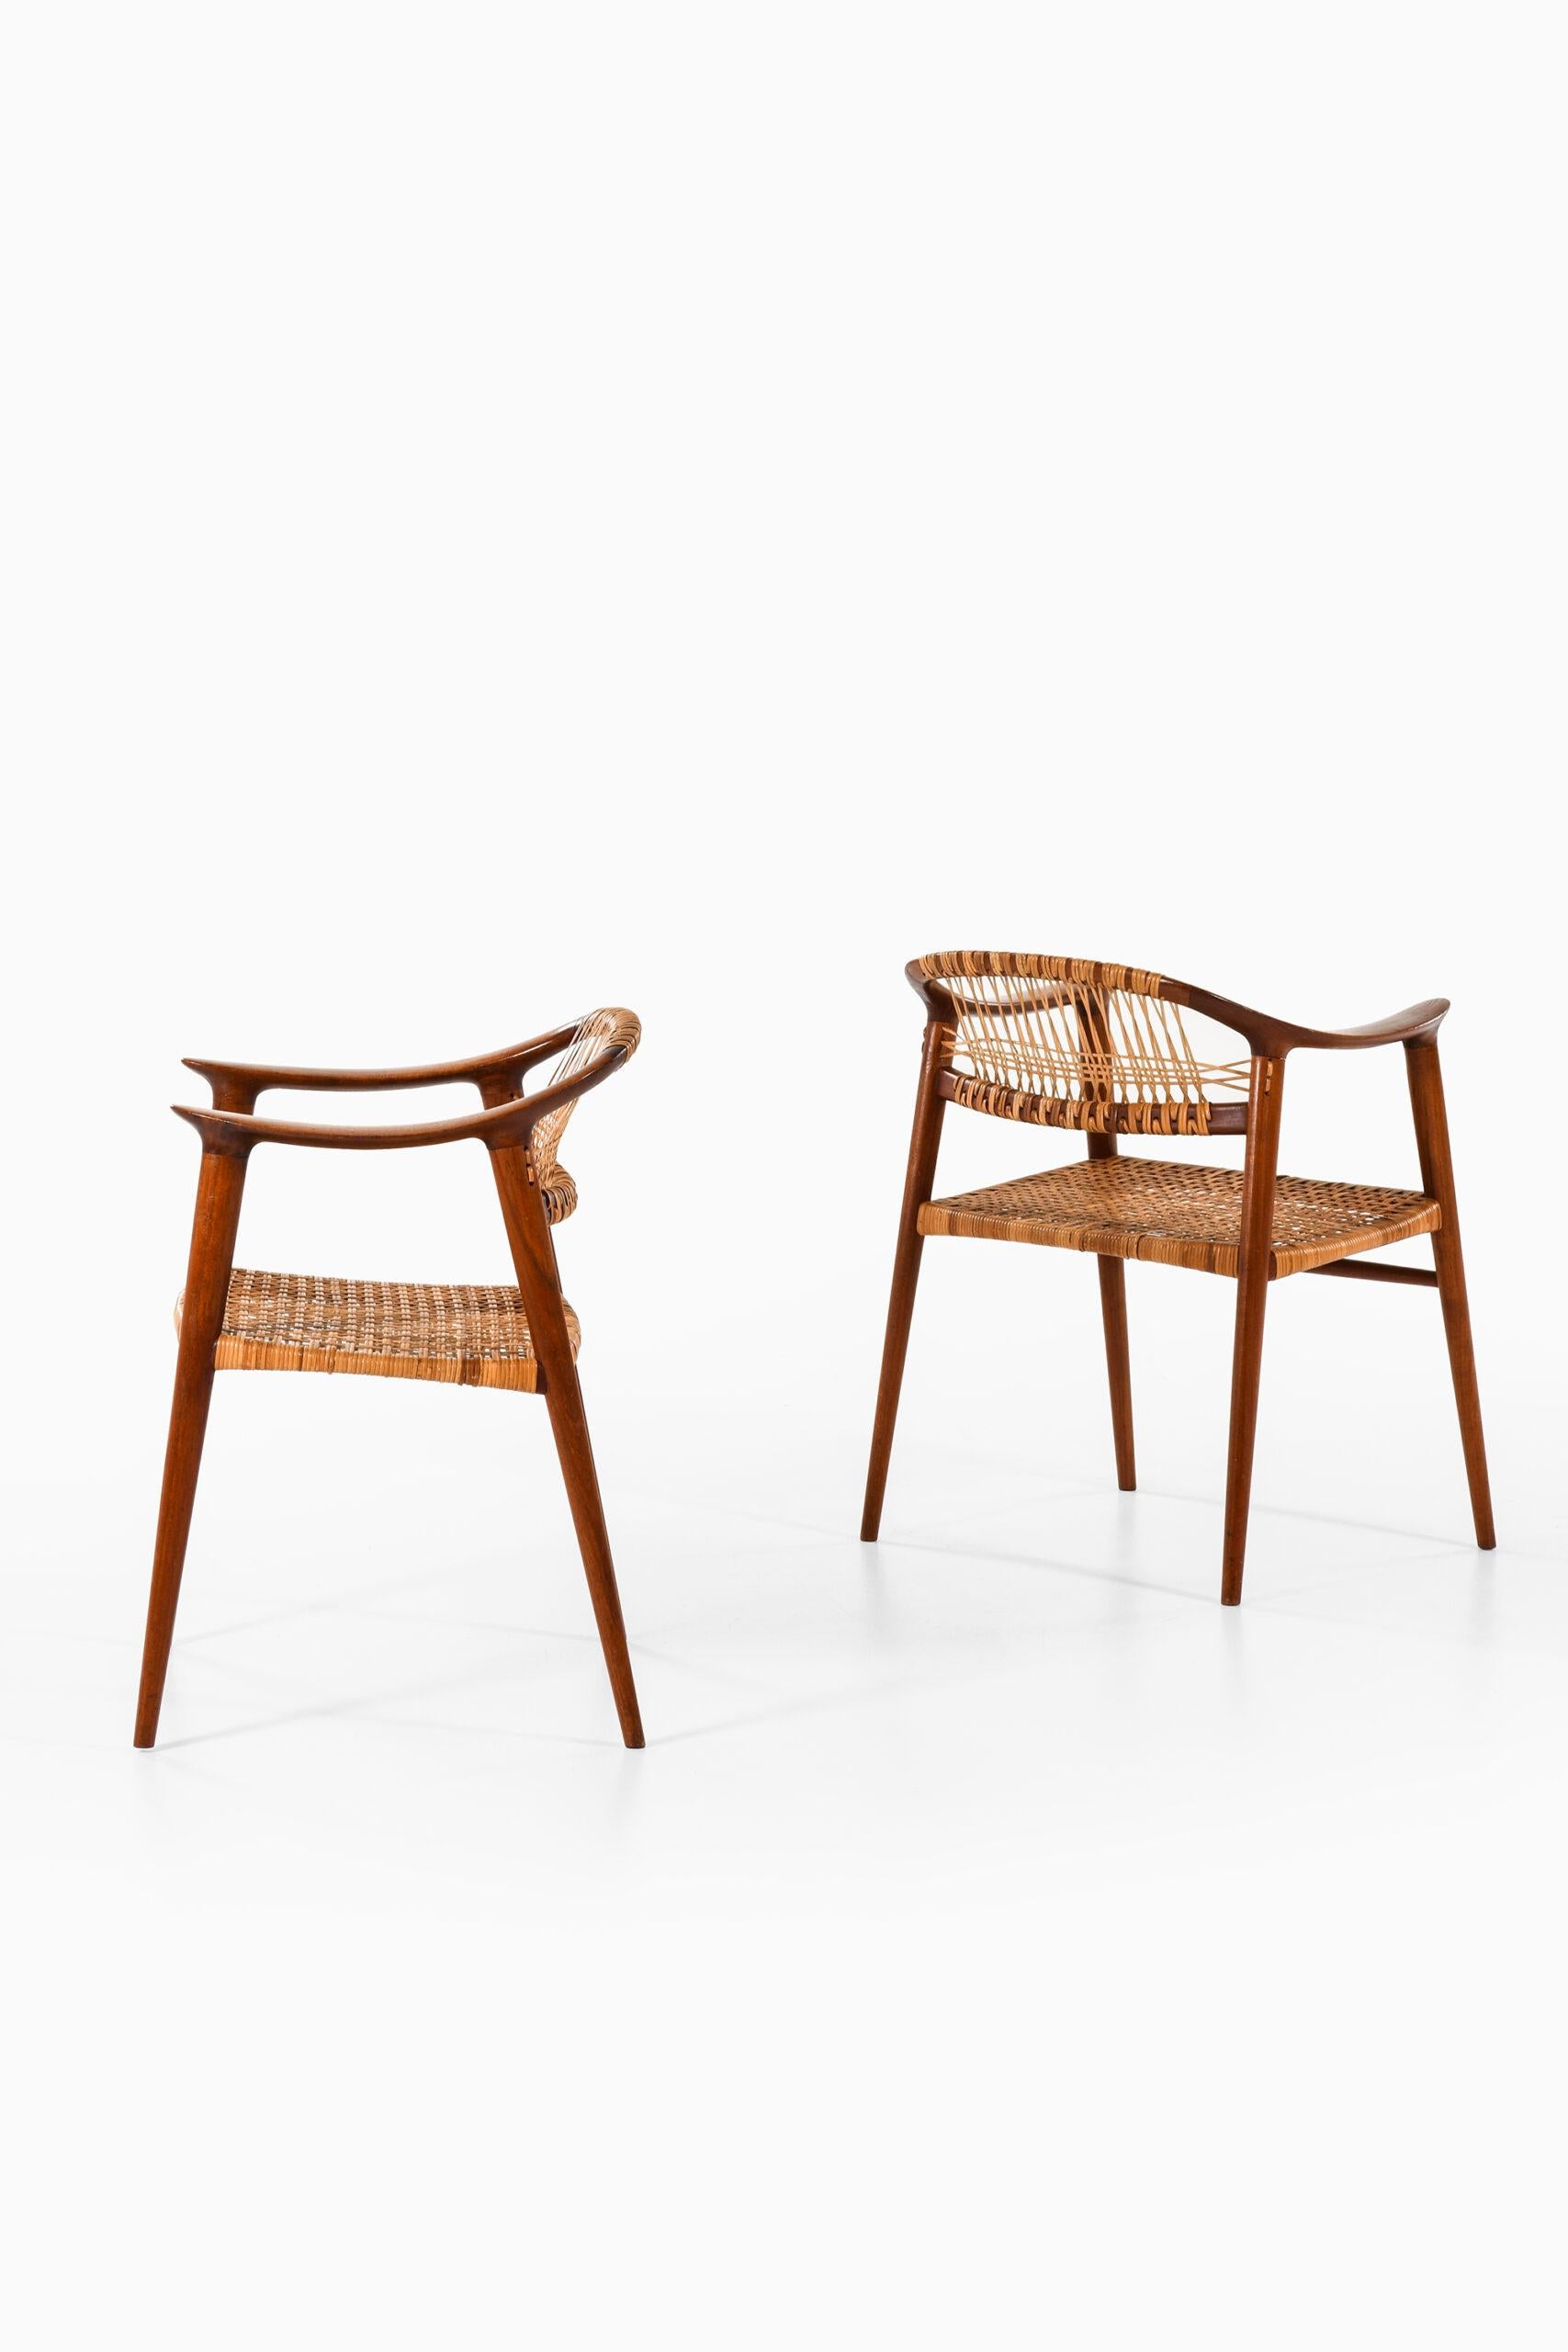 Seltenes Paar Sessel Modell Bambi entworfen von Rolf Rastad & Adolf Relling. Produziert von Gustav Bahus & Eft in Norwegen.